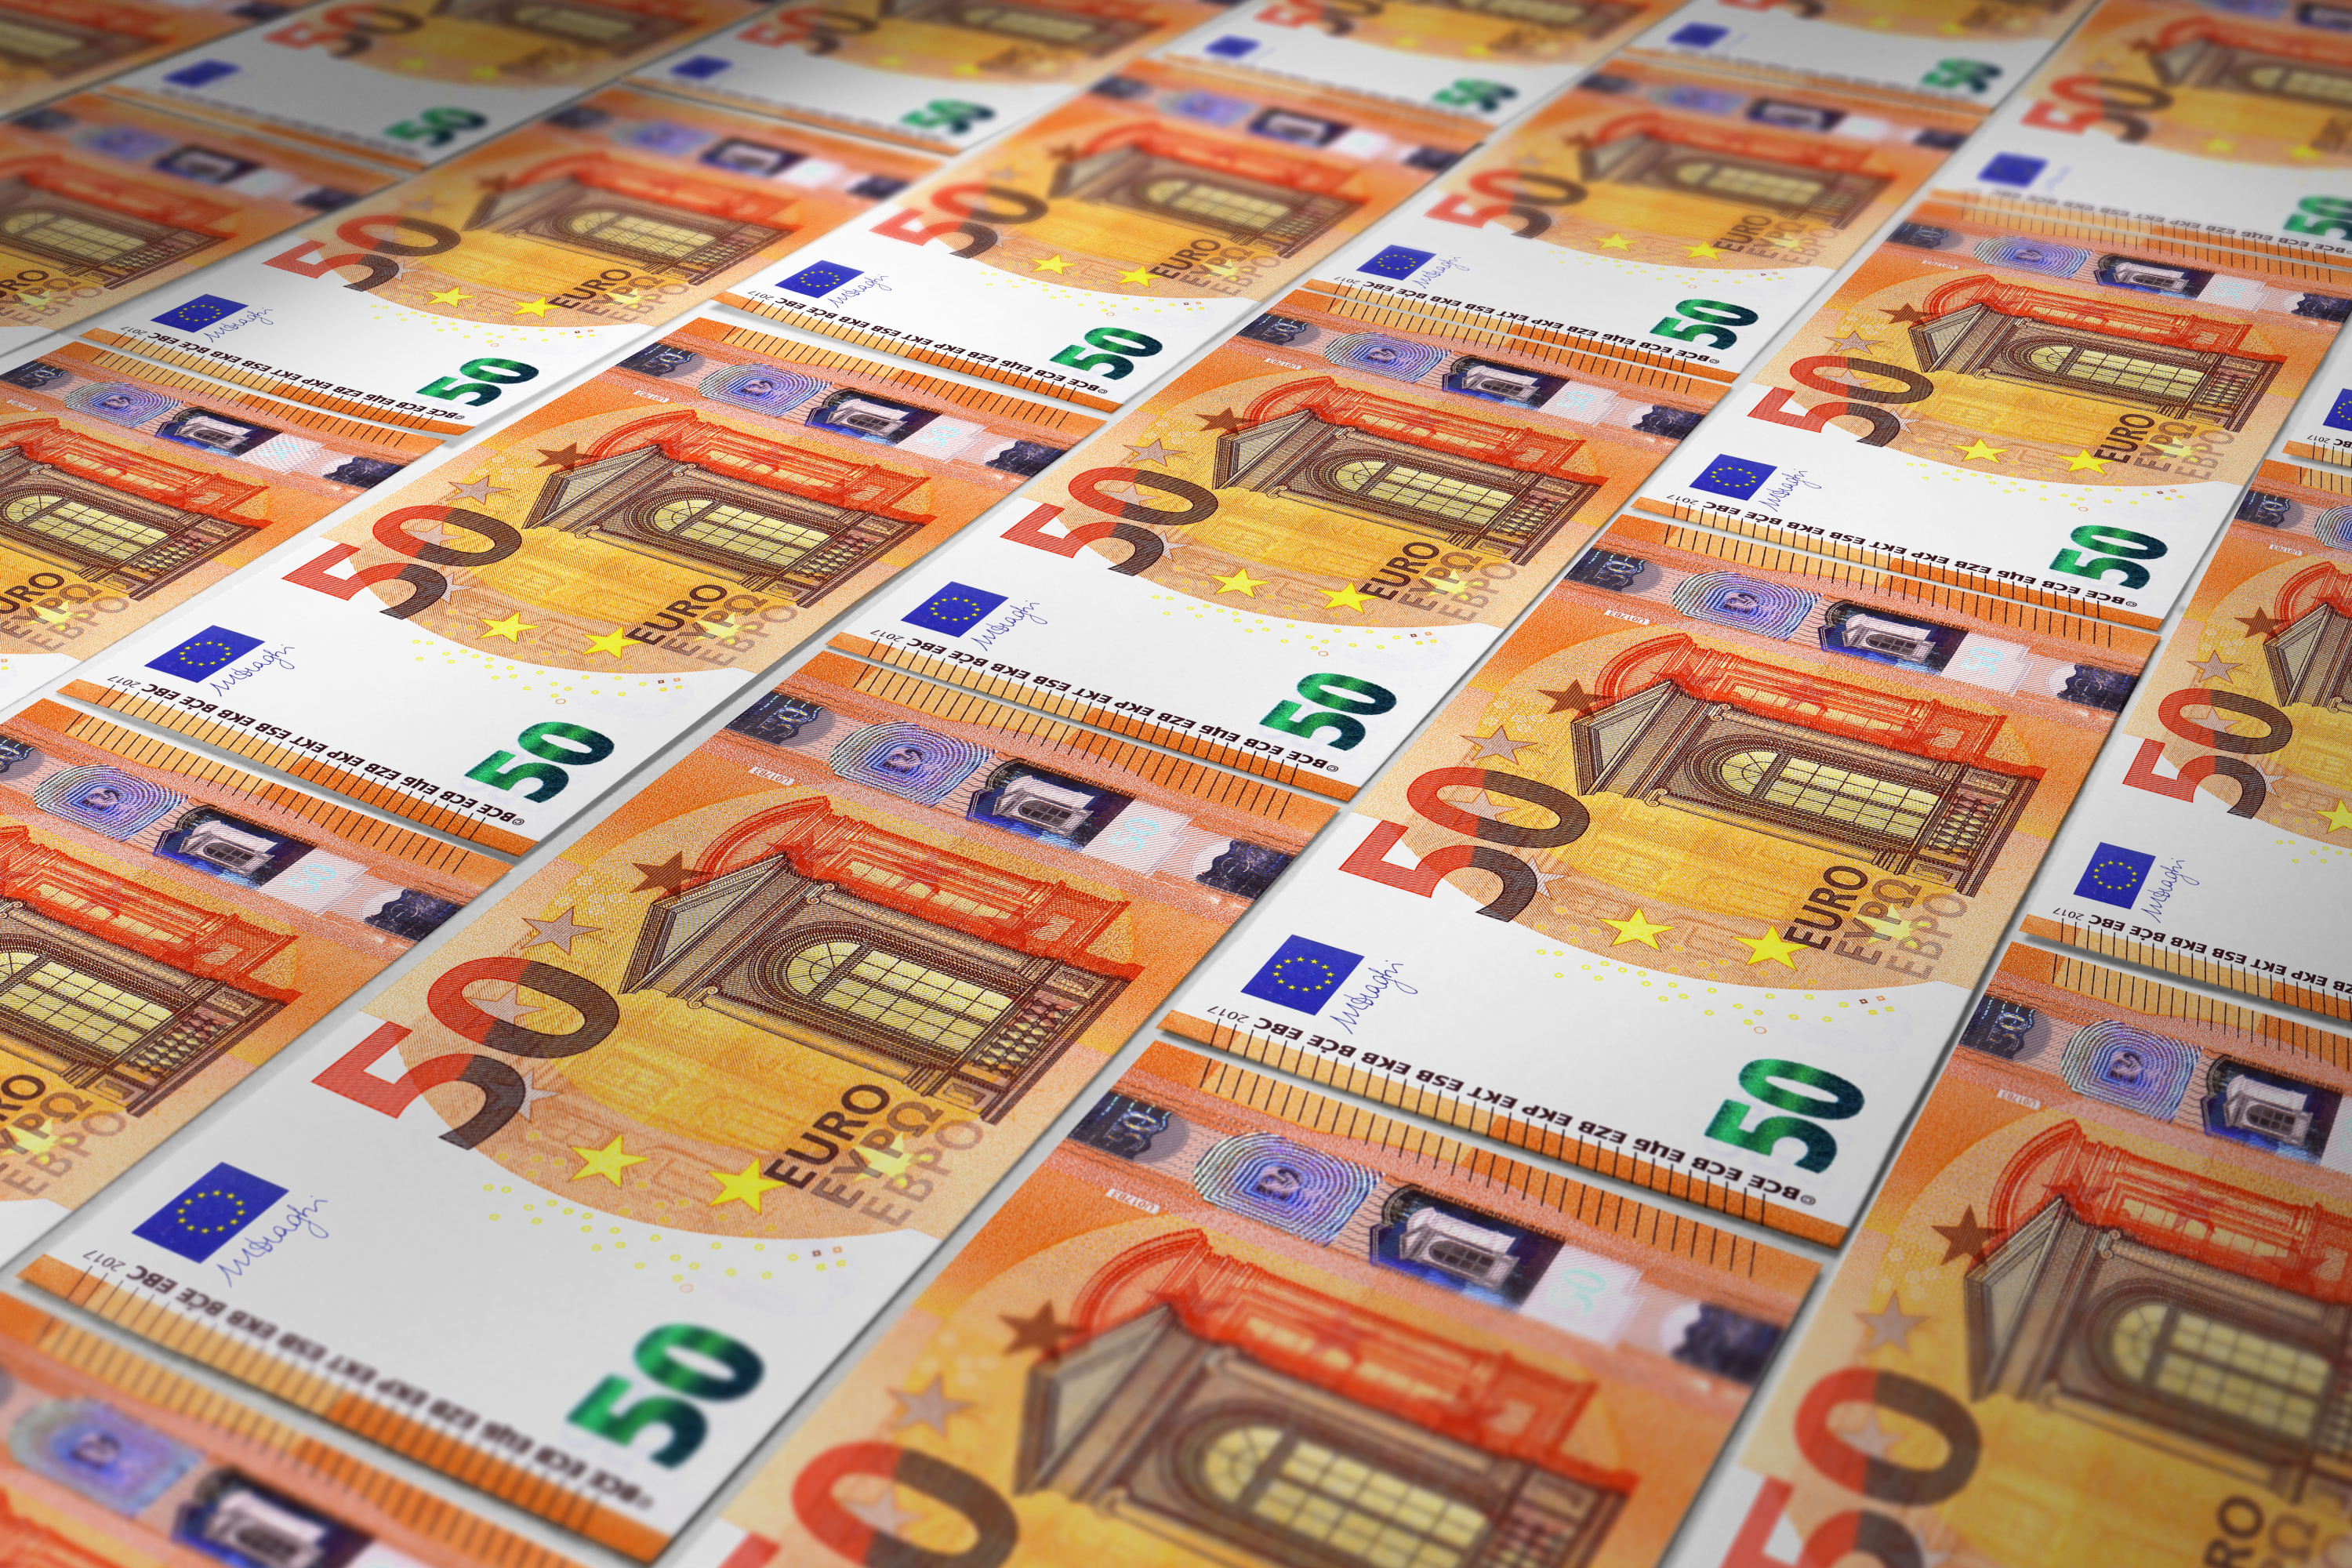 Euro : le motif des nouveaux billets soumis à une consultation